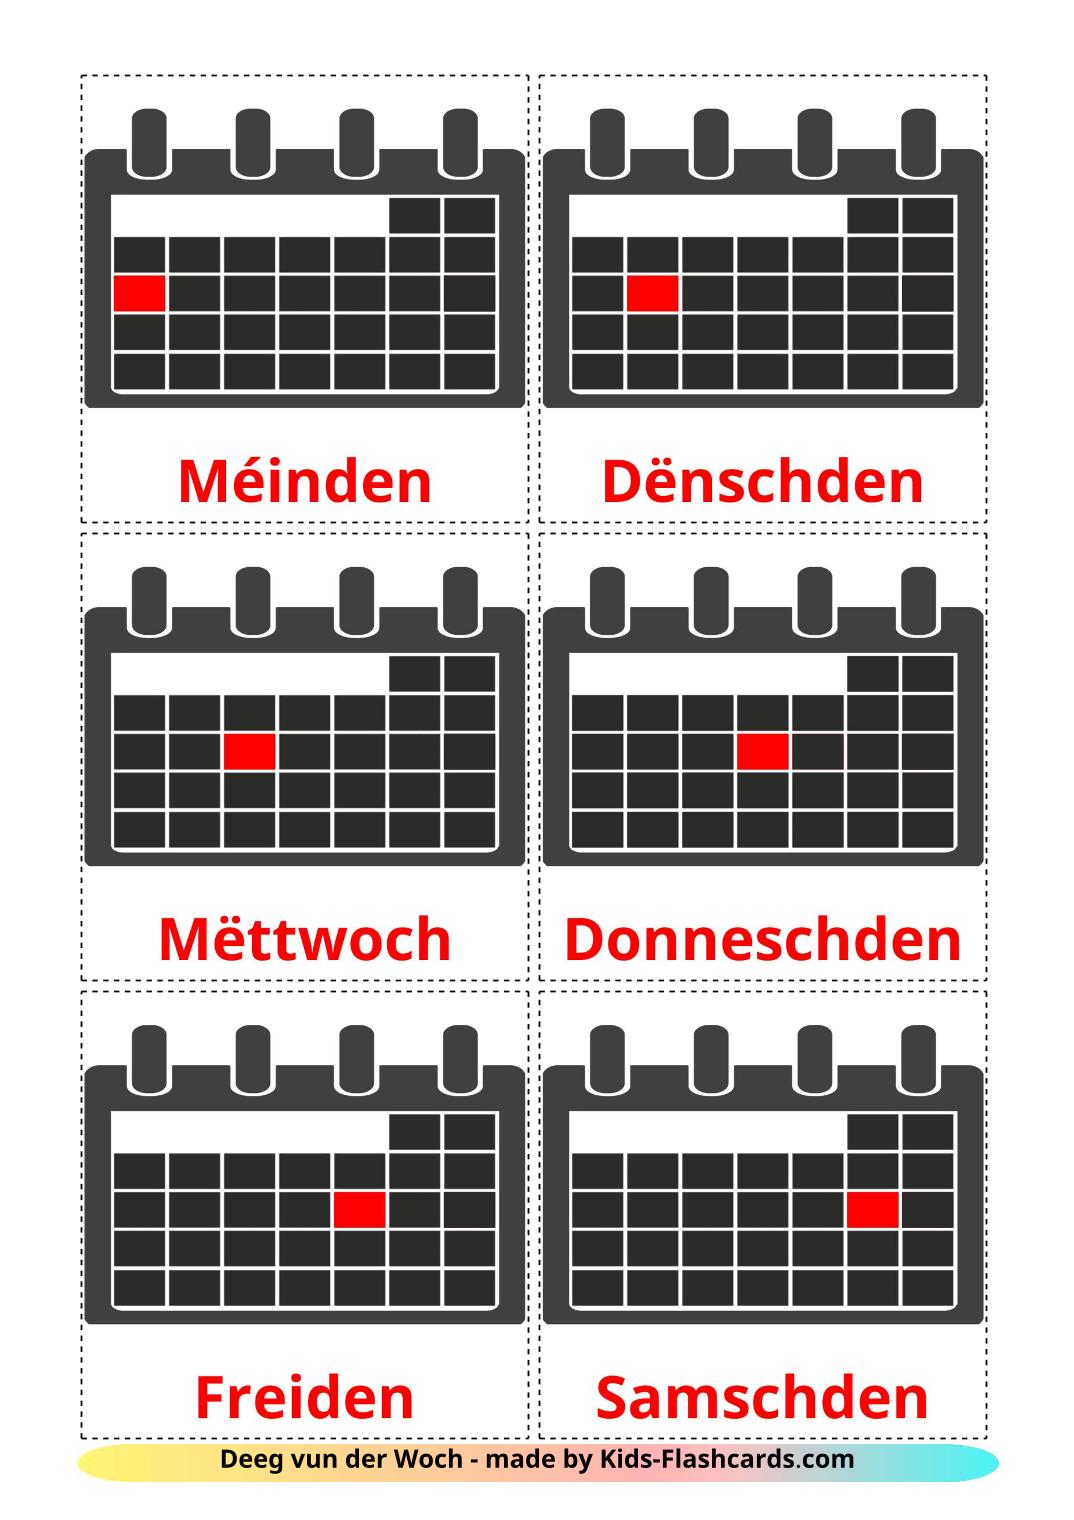 Dagen van de week - 12 gratis printbare luxemburgse kaarten